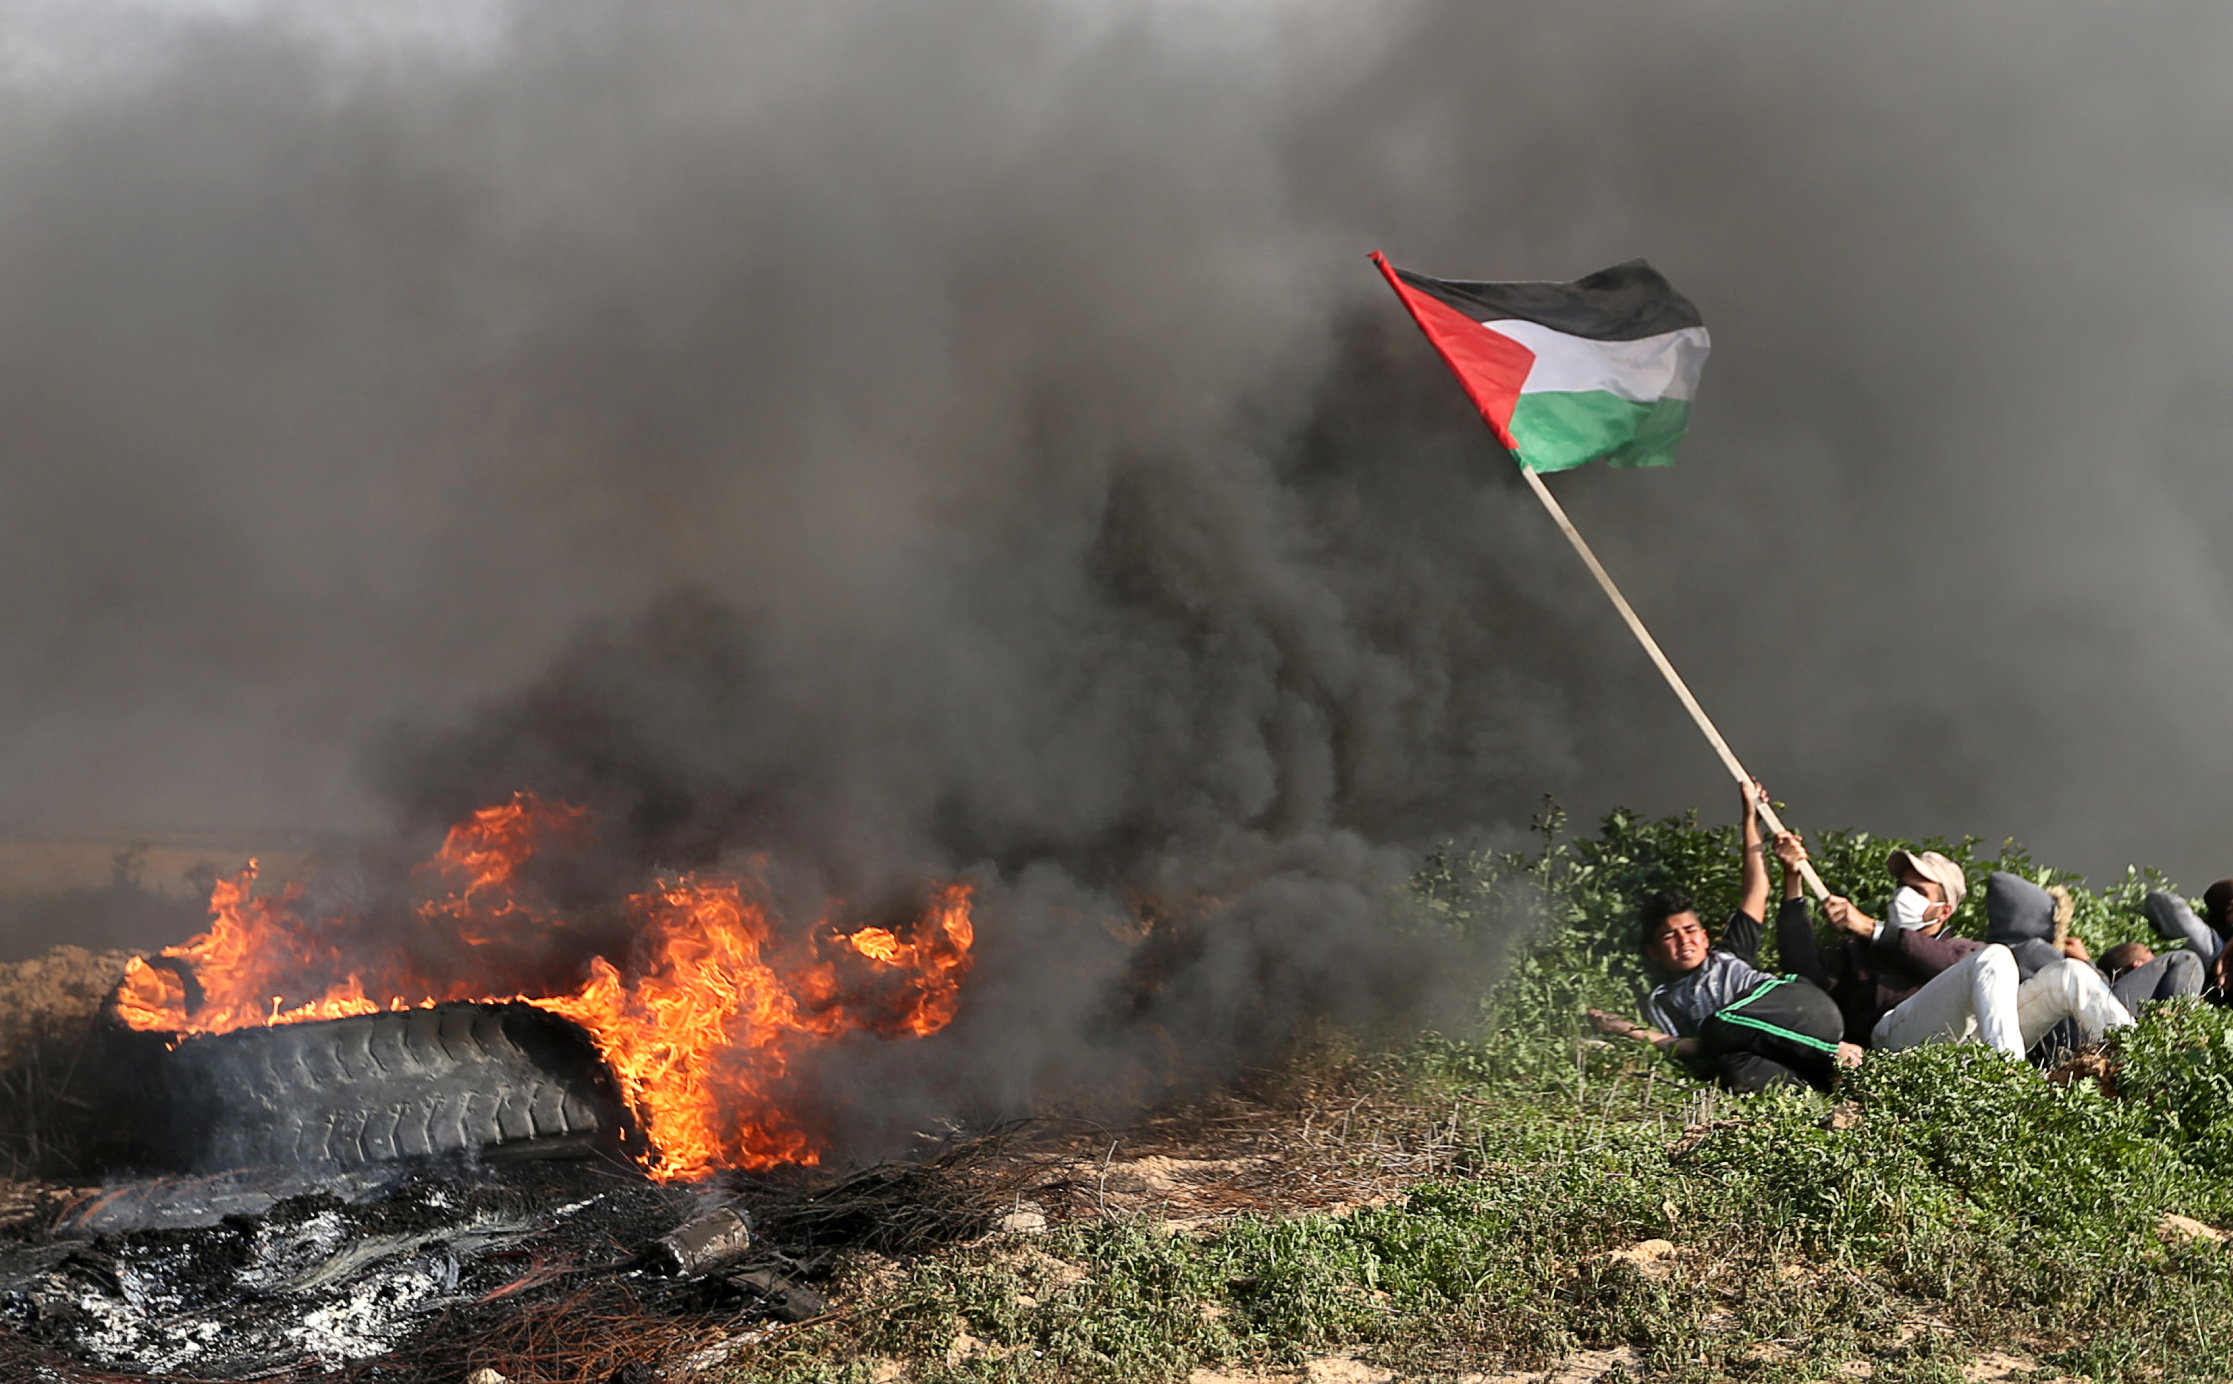 Ejército de Israel: explosión cerca de Gaza deja 4 soldados heridos